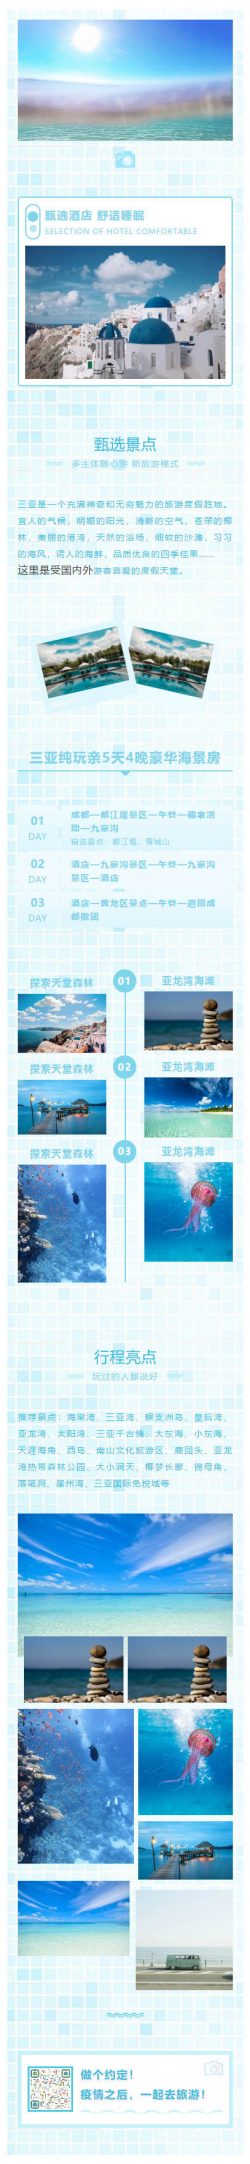 夏天旅游旅行海边网格背景蓝色公众号推文模板微信模板